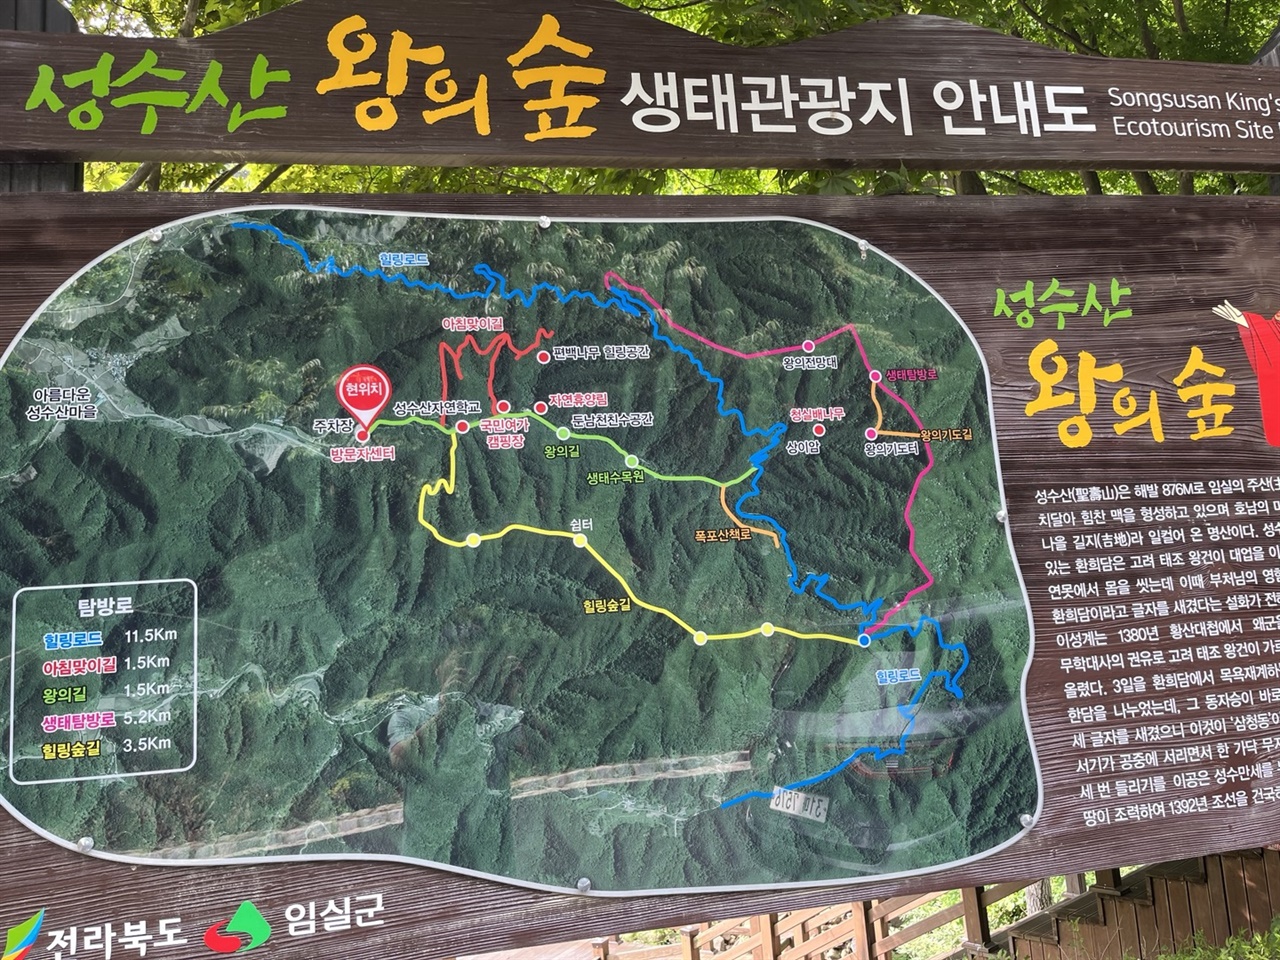 성수산 왕의 숲 생태관광지 안내도